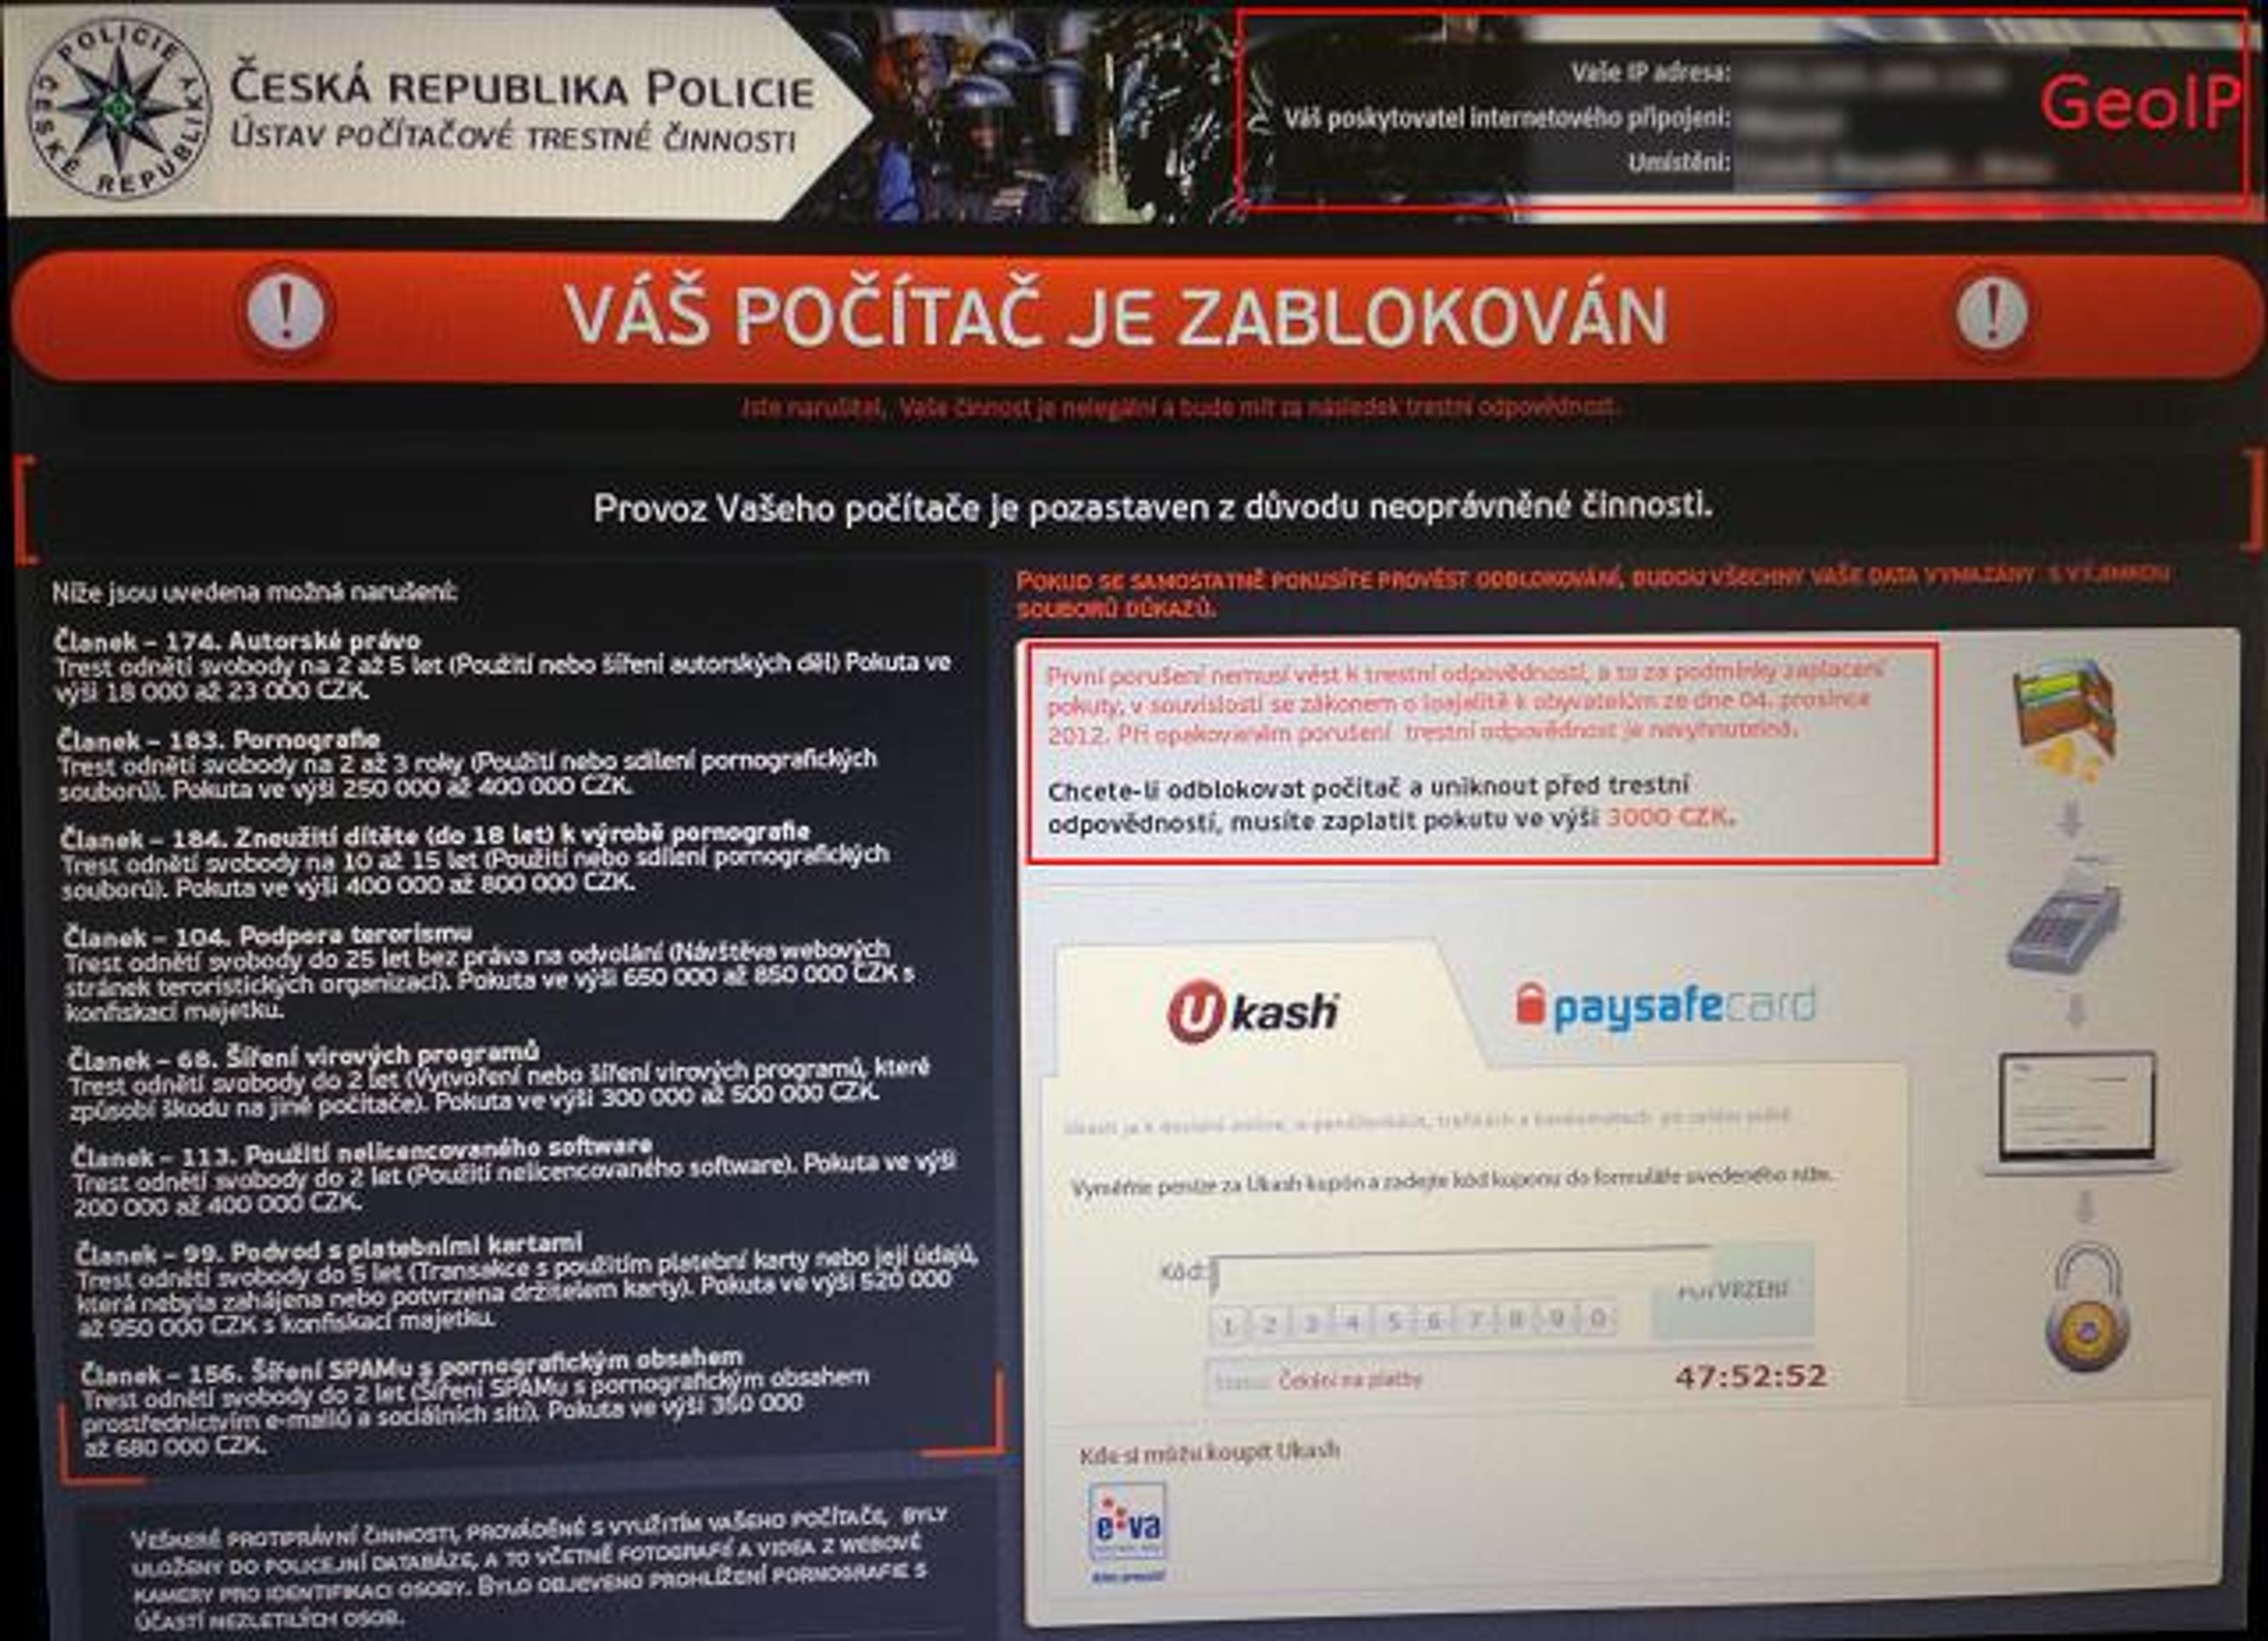 Vir: Zablokování PC PČR - GALERIE: Vir - blokování počítače policií (3/3)